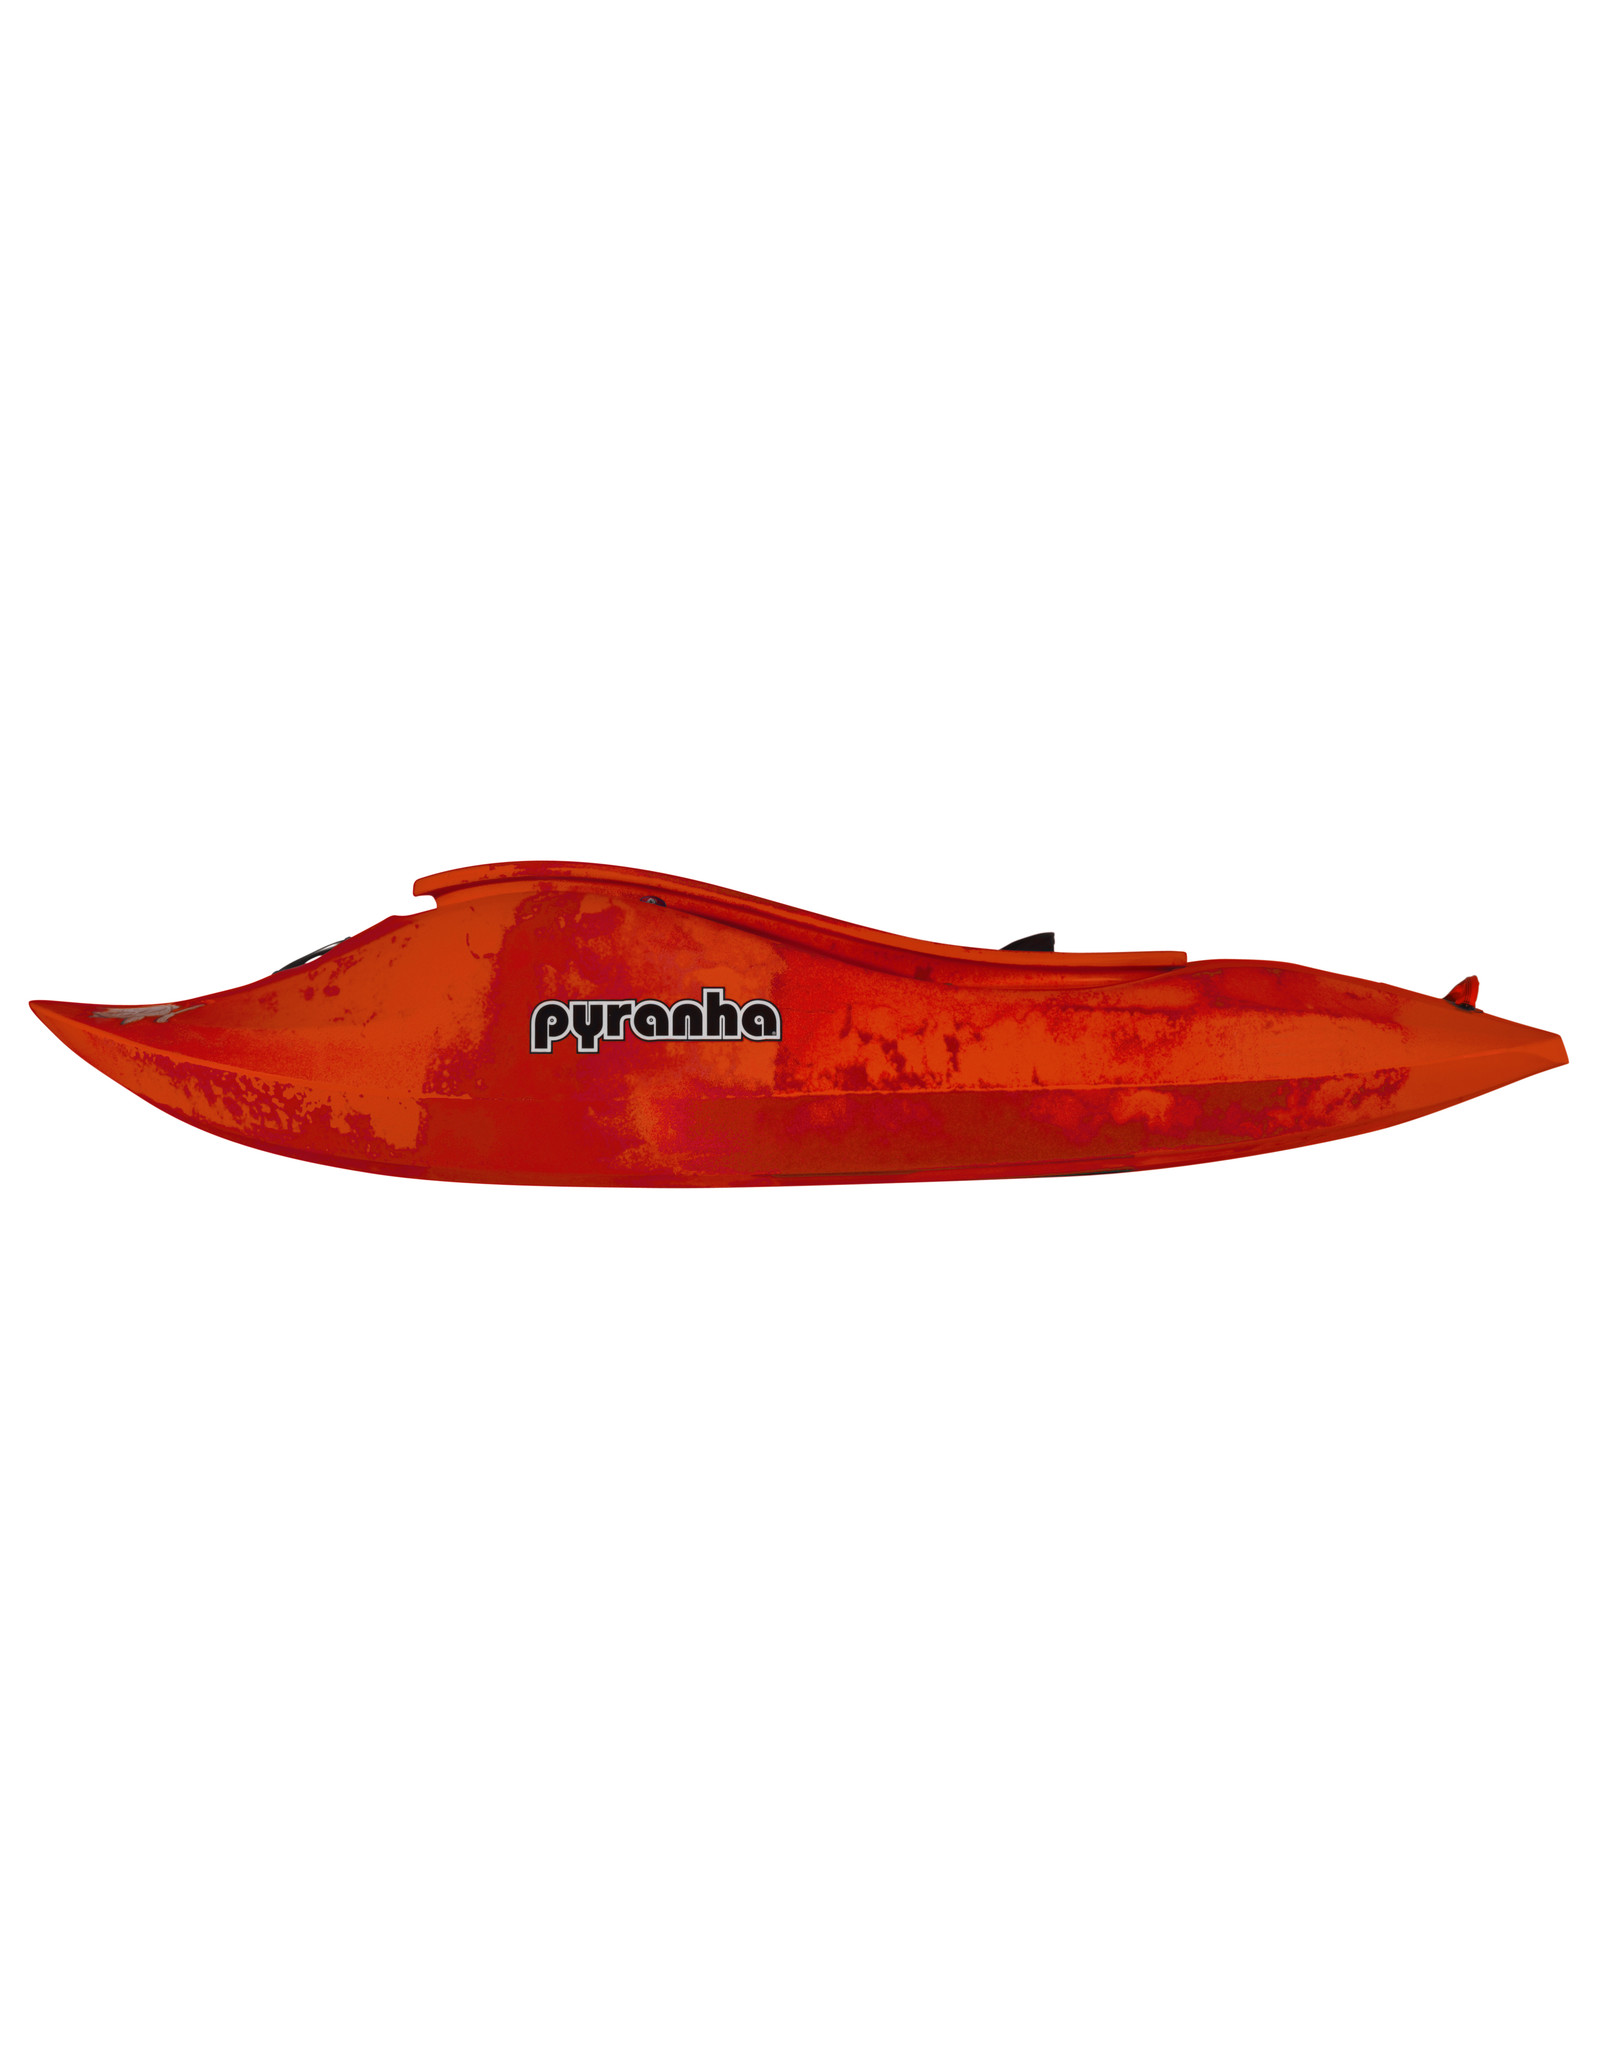 Pyranha Pyranha kayak Jed Stout